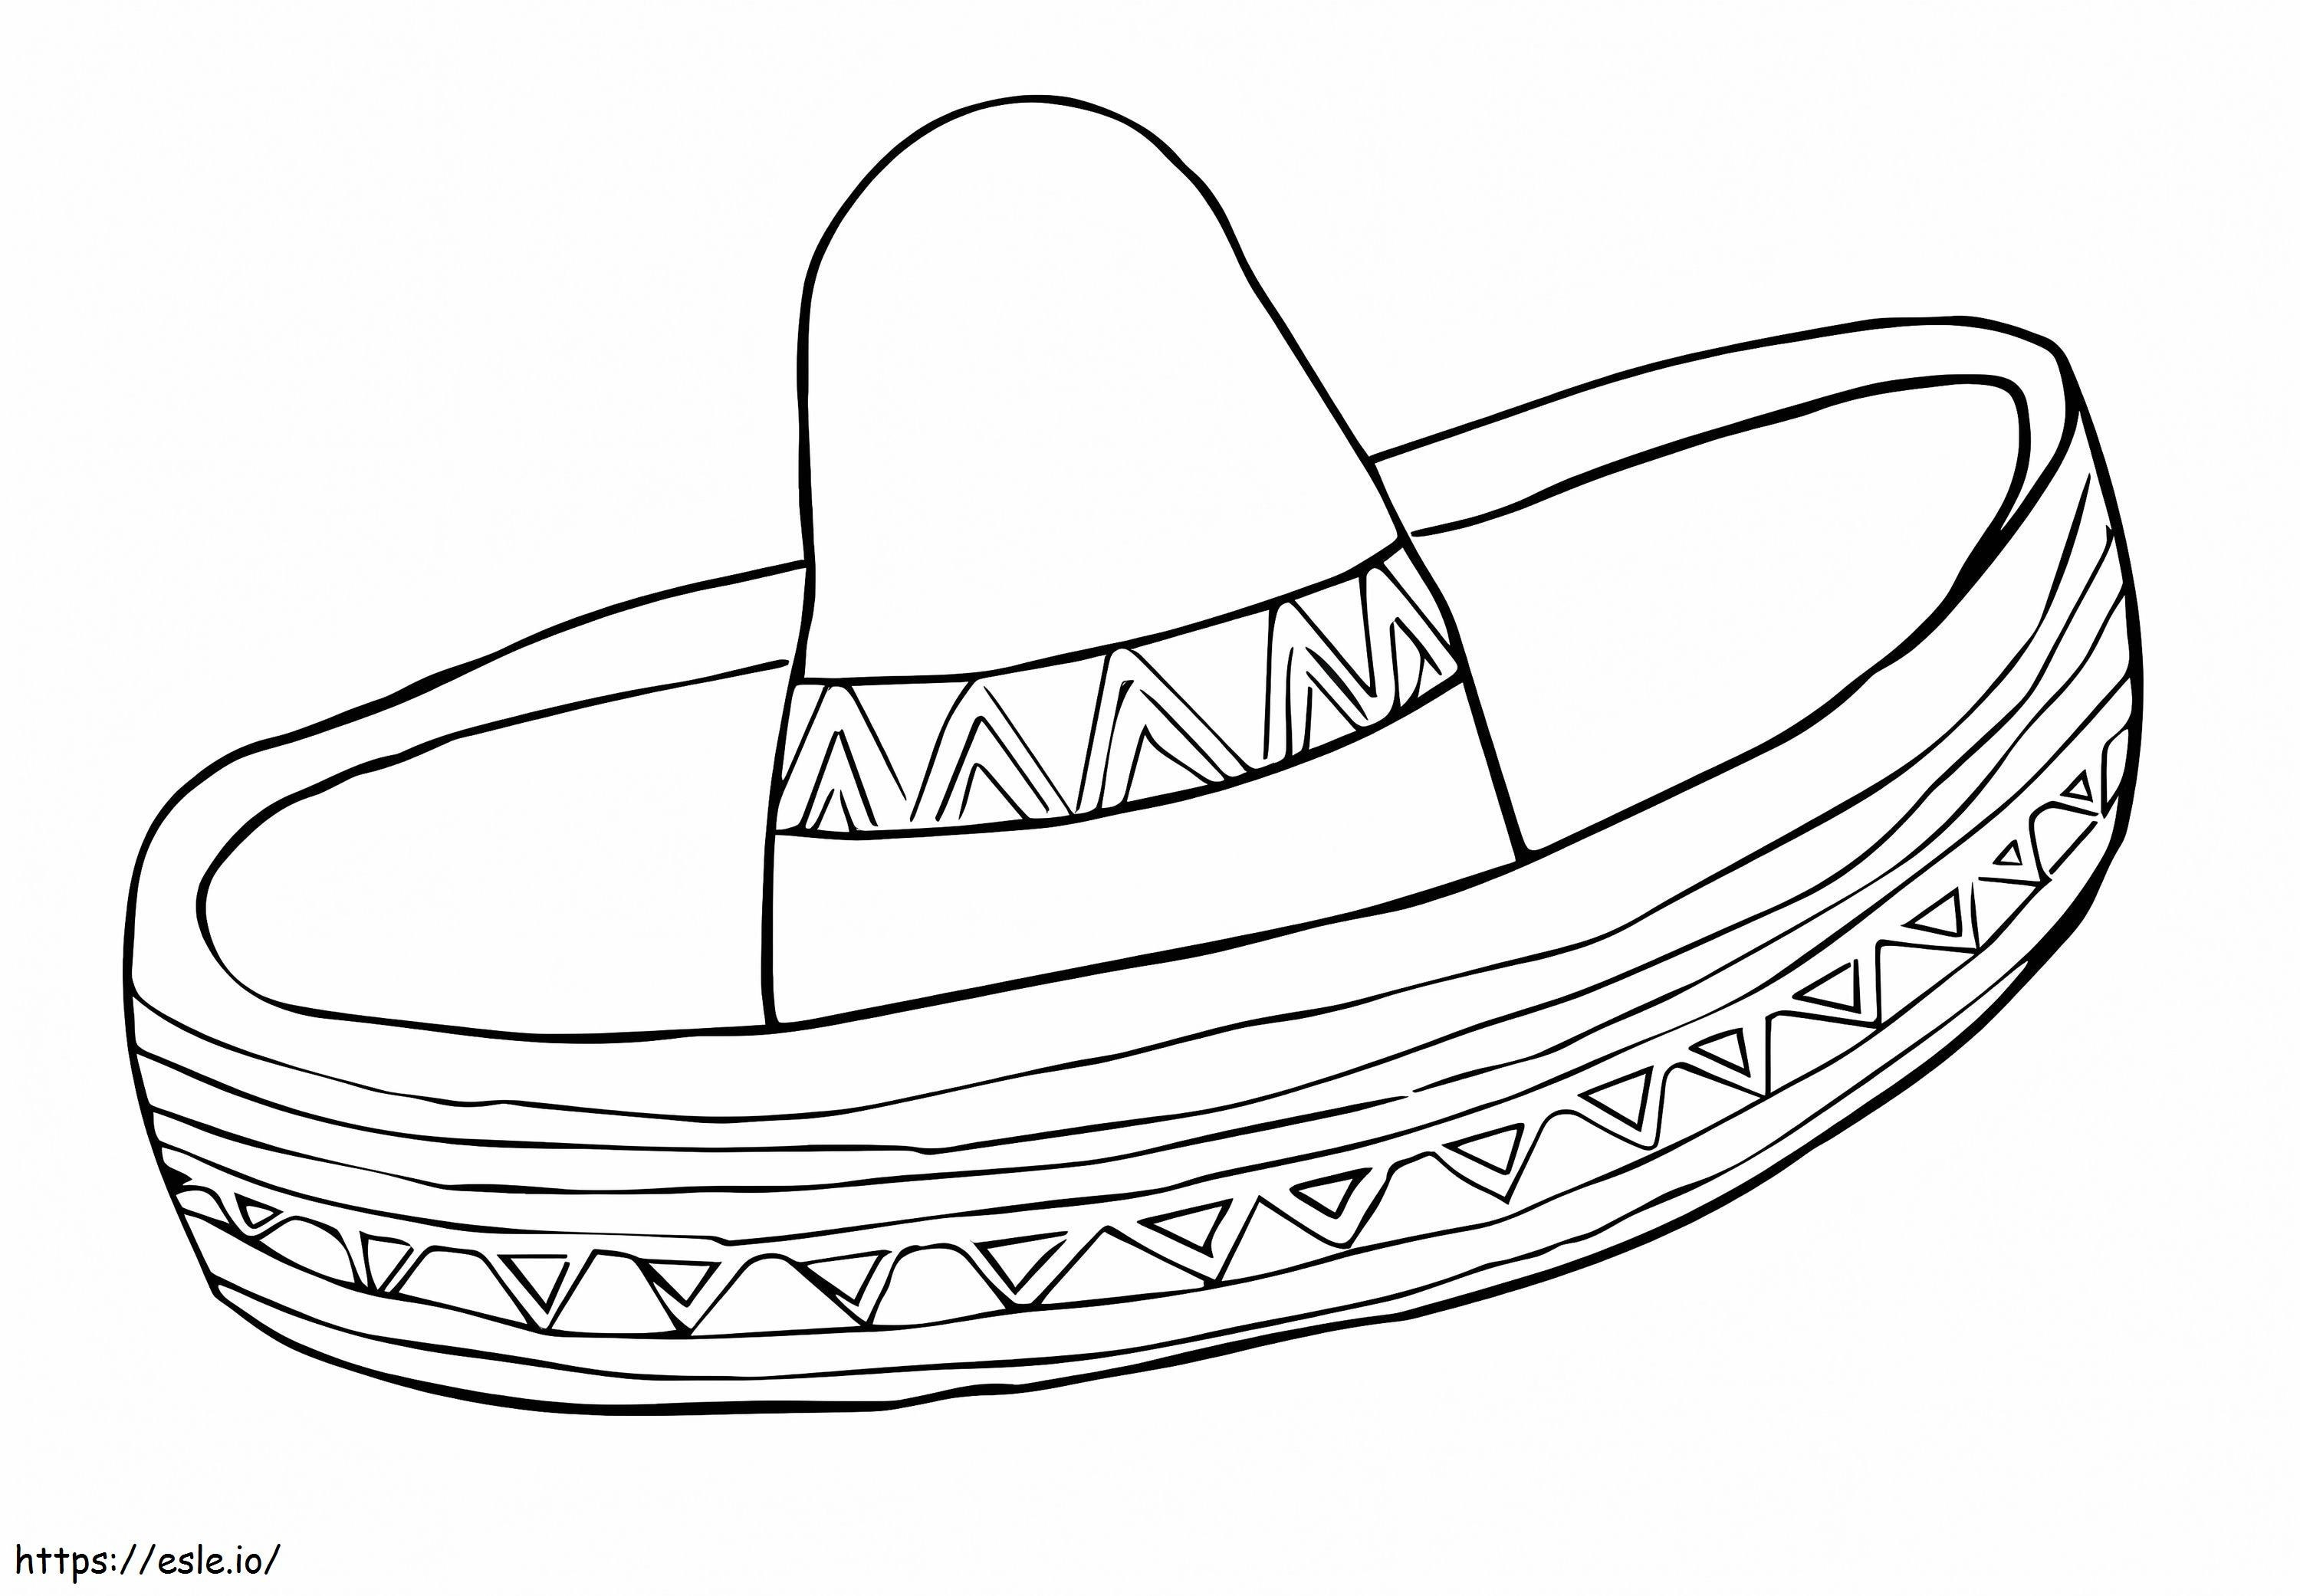 Zwykły meksykański kapelusz kolorowanka